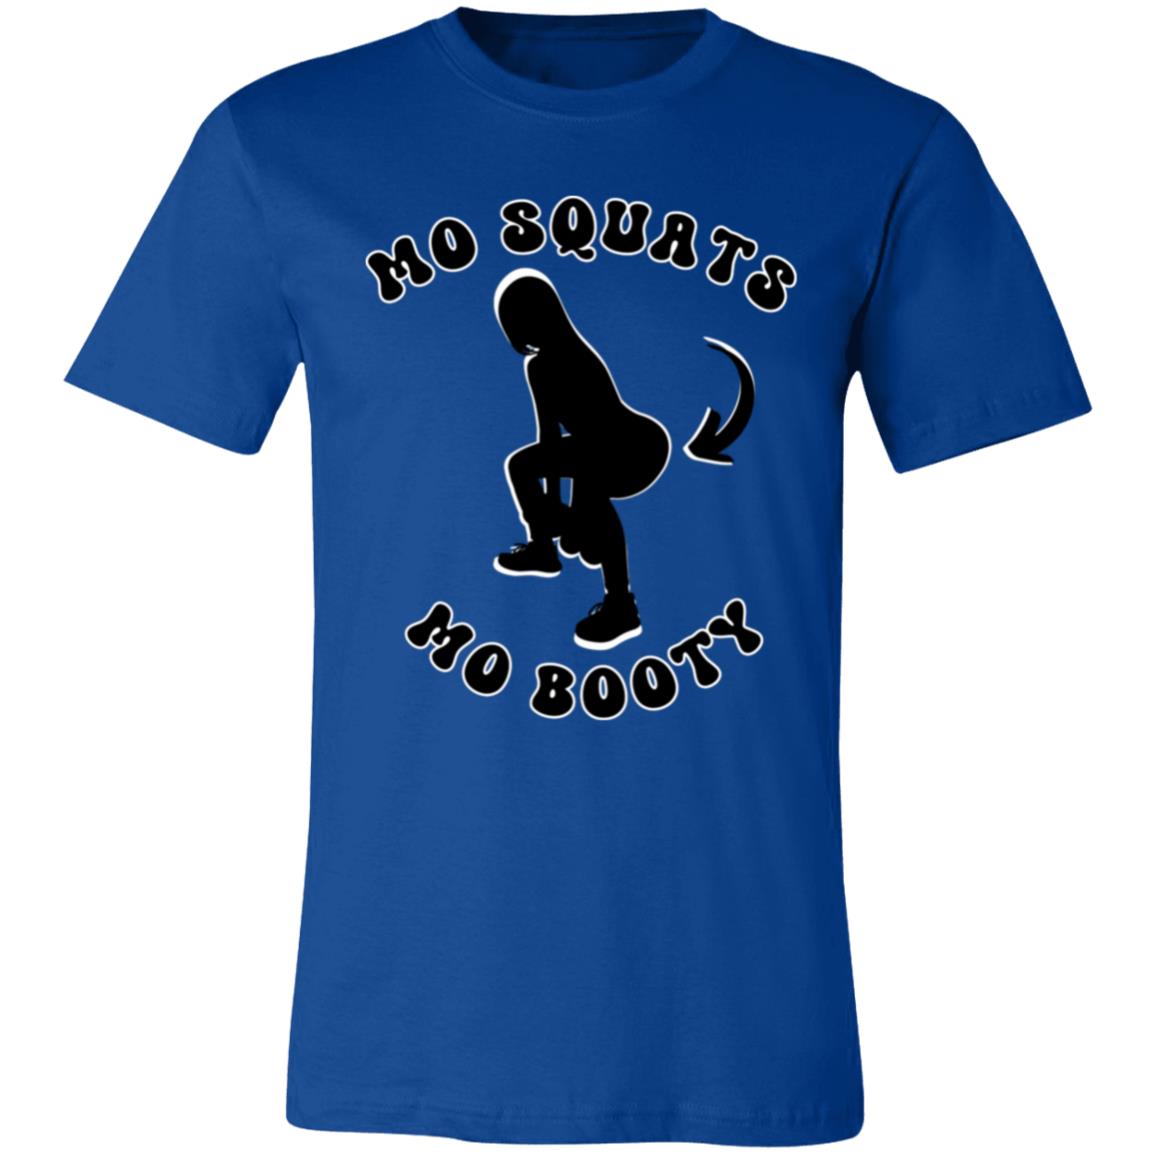 Mo Squats Mo Booty Shirt